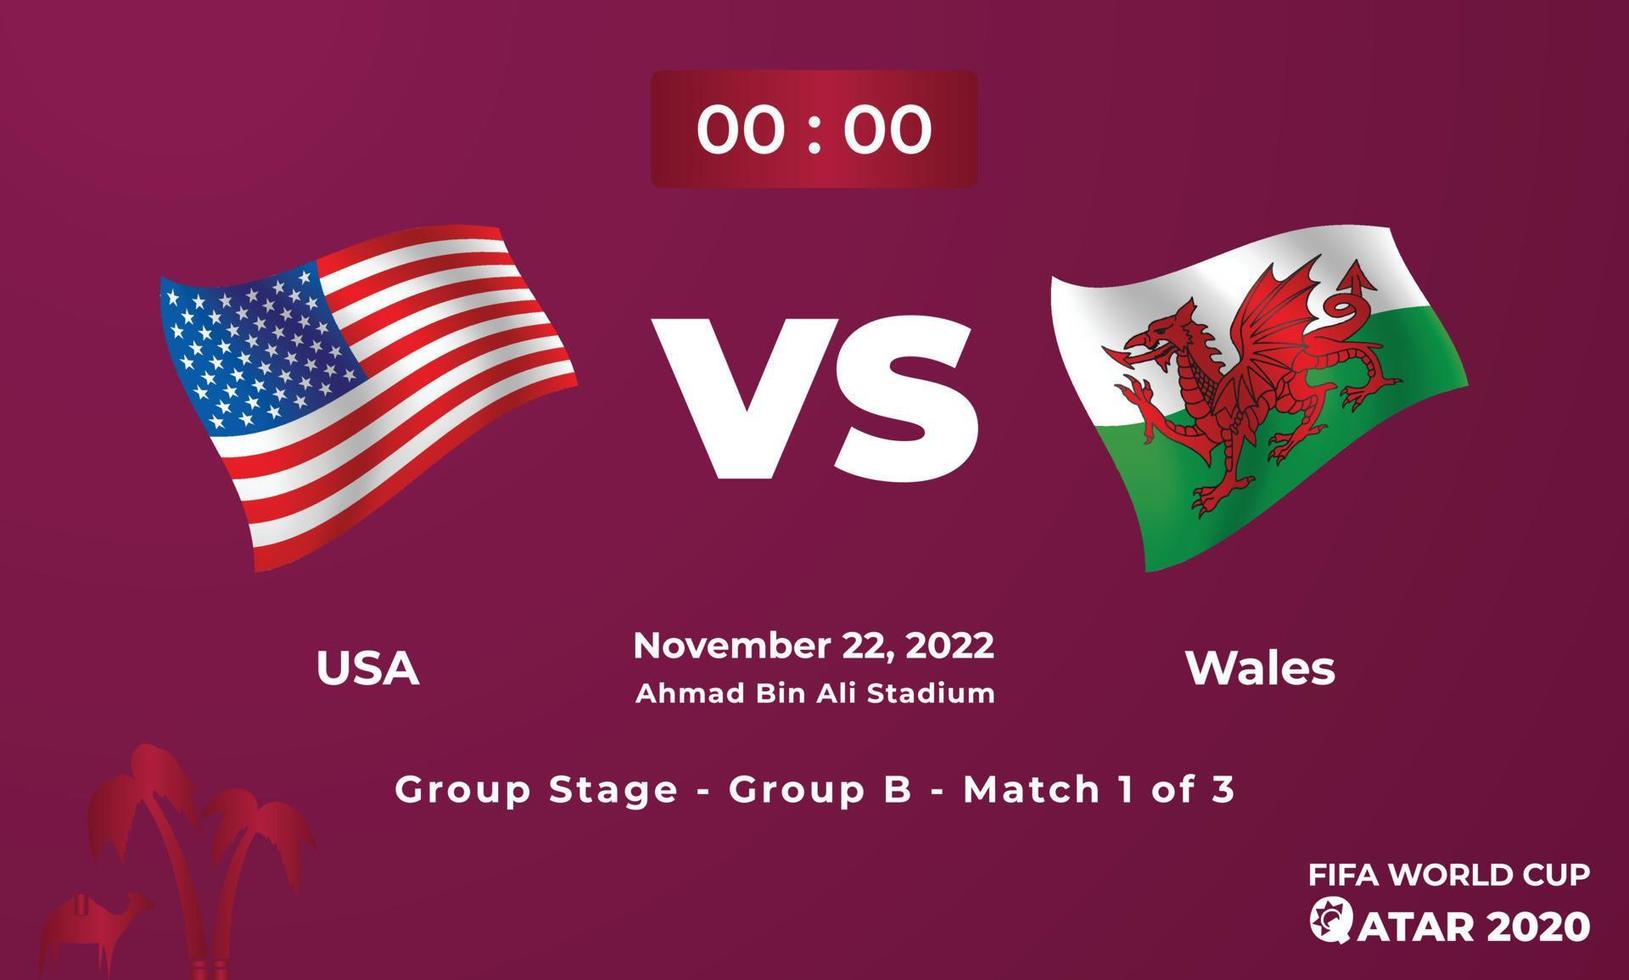 plantilla de partido de fútbol de estados unidos vs gales, copa mundial de la fifa en qatar 2022 vector